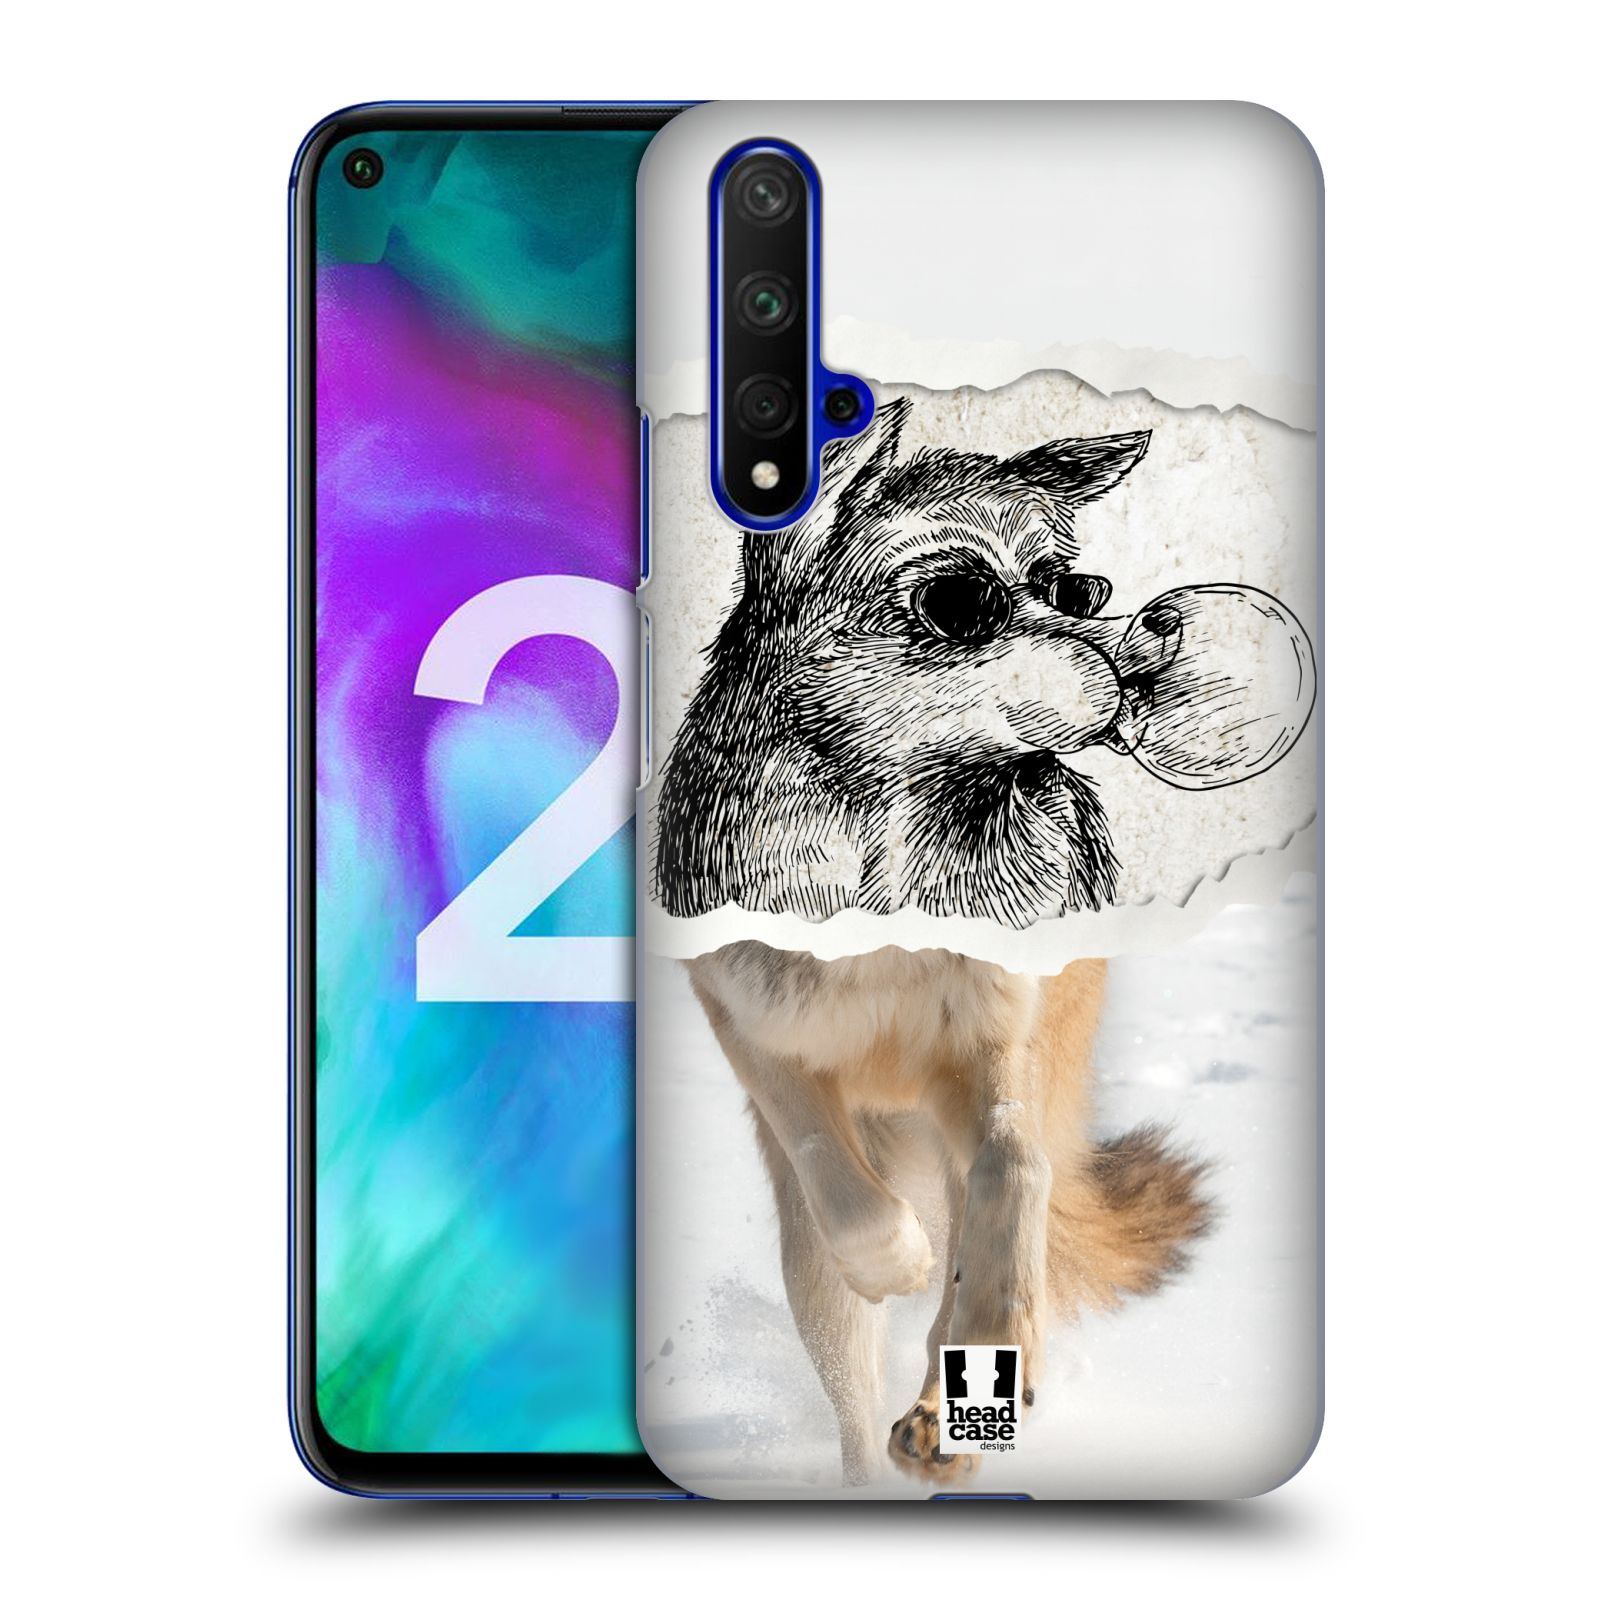 Pouzdro na mobil Honor 20 - HEAD CASE - vzor zvířata koláž vlk pohodář